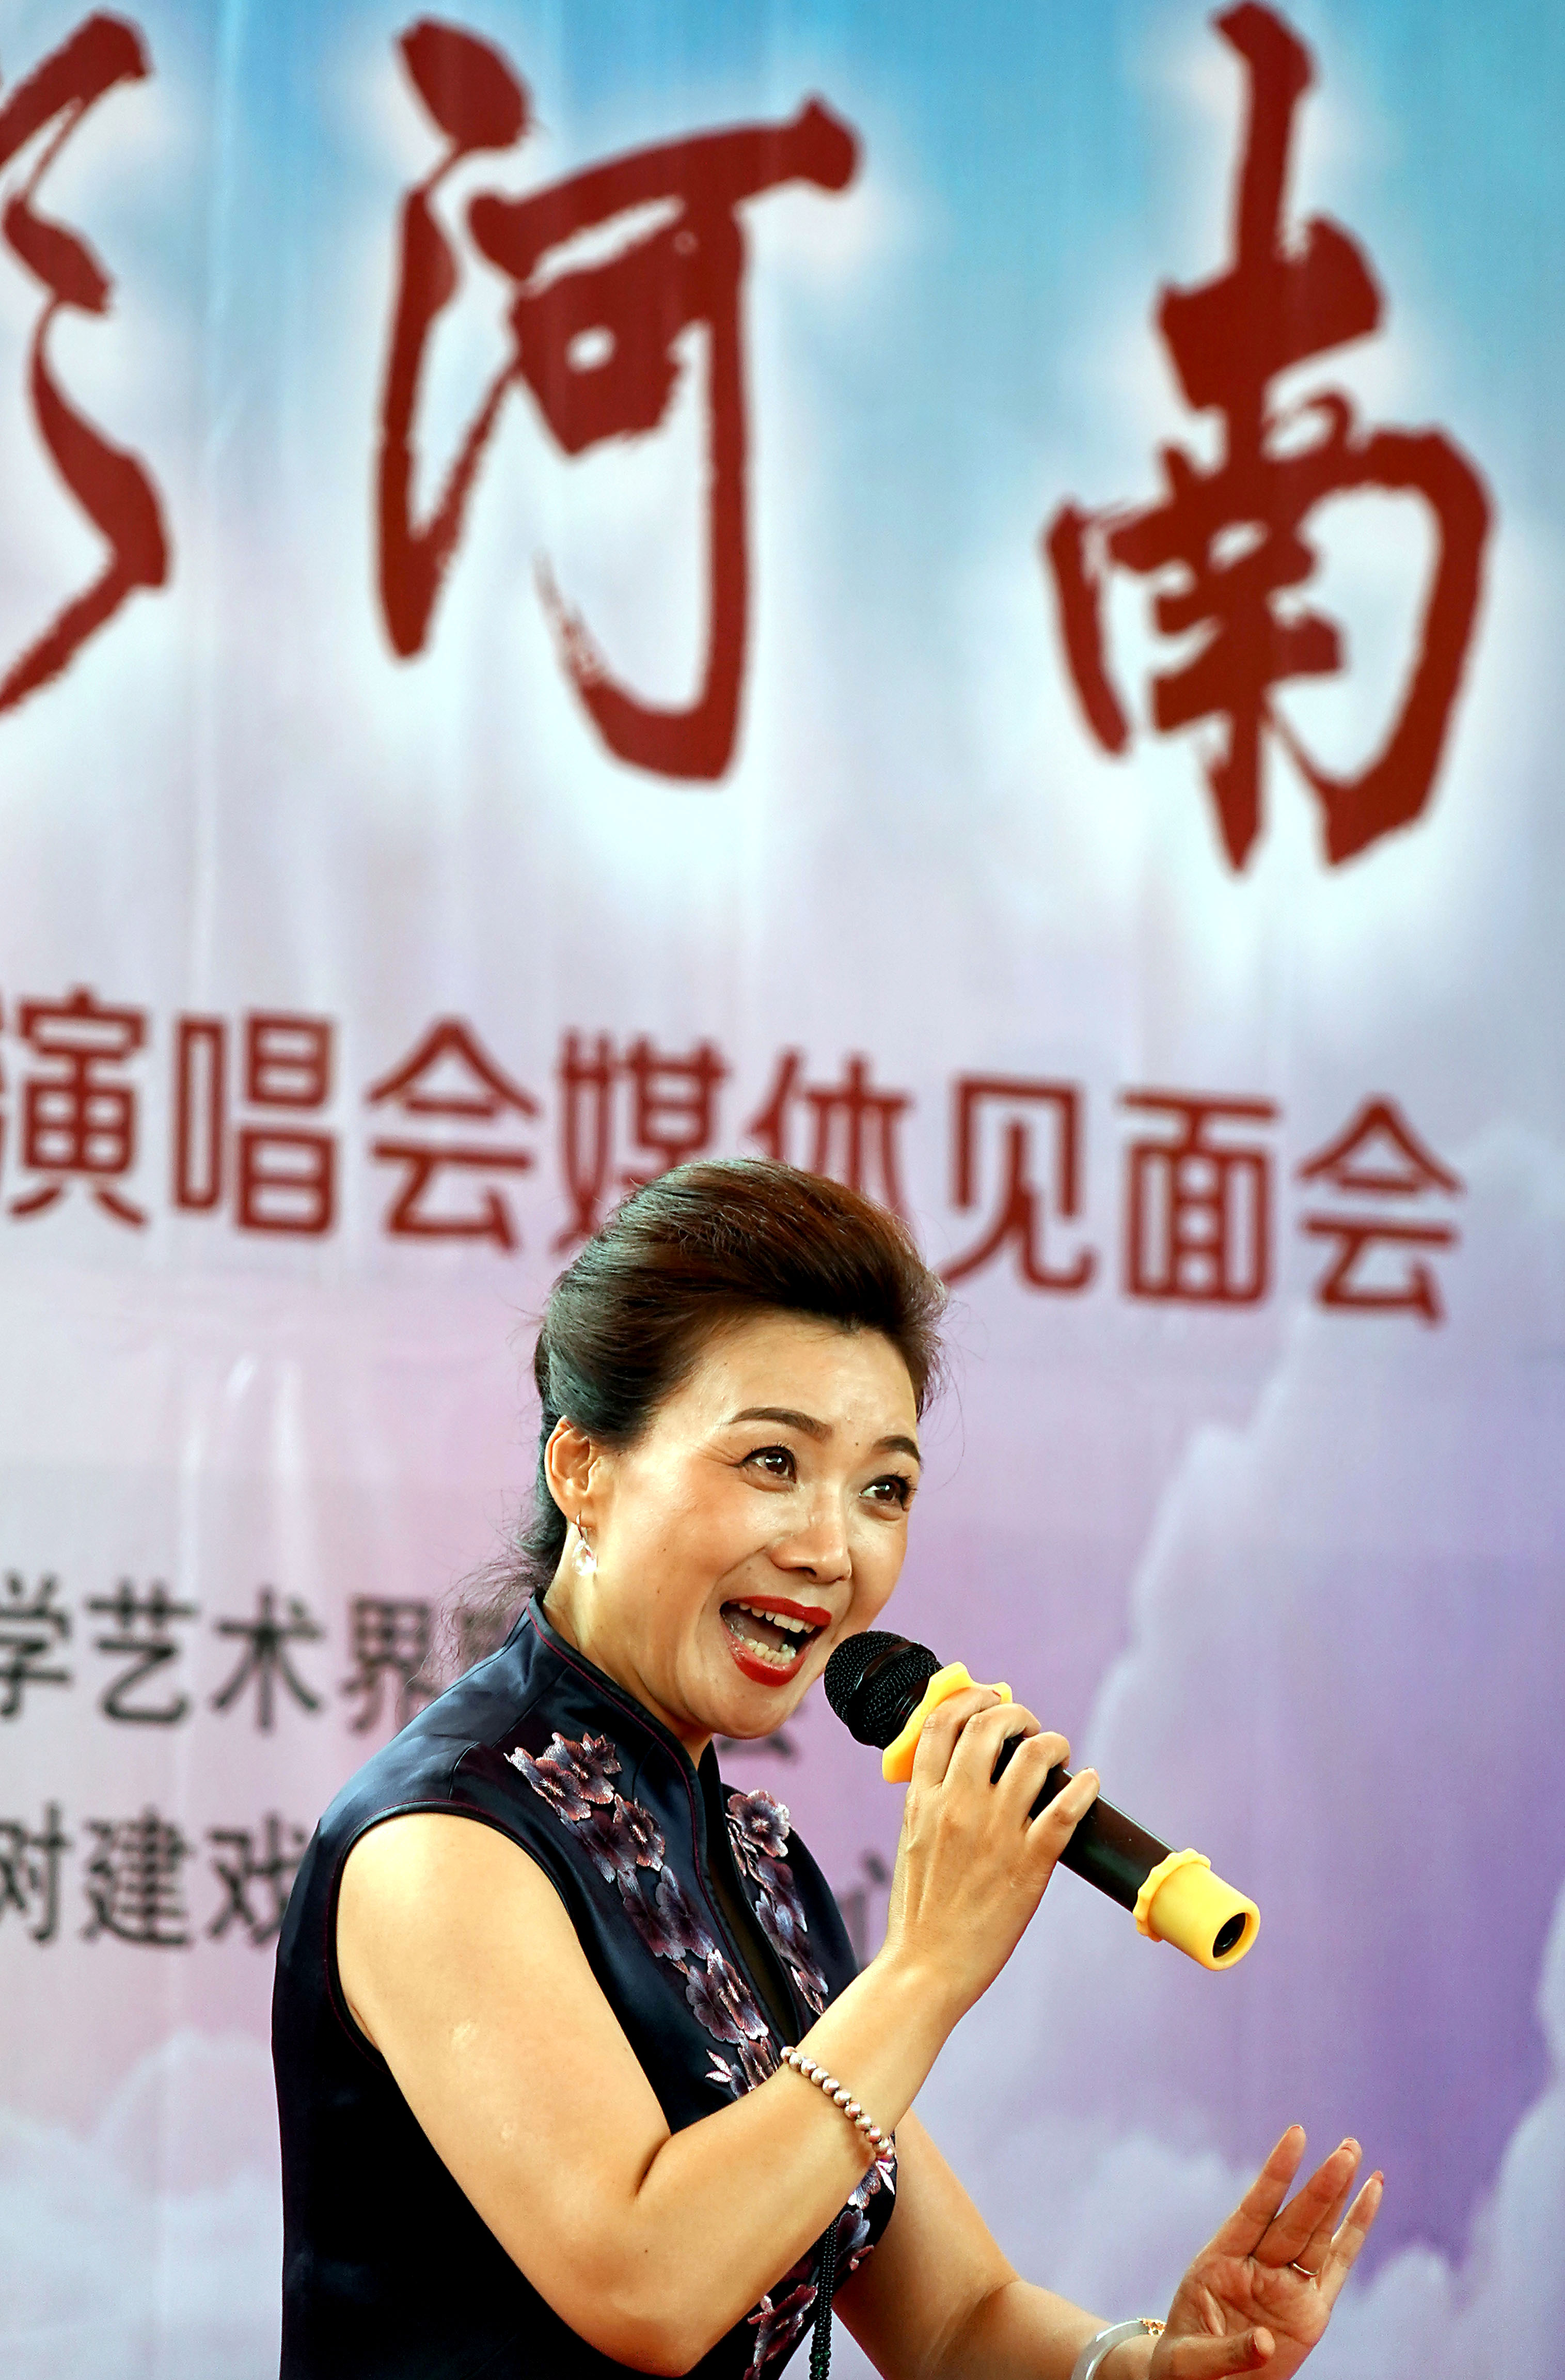 6月30日,曲剧演员刘艳丽在表演《风雪配》选段.新华社记者 李安 摄